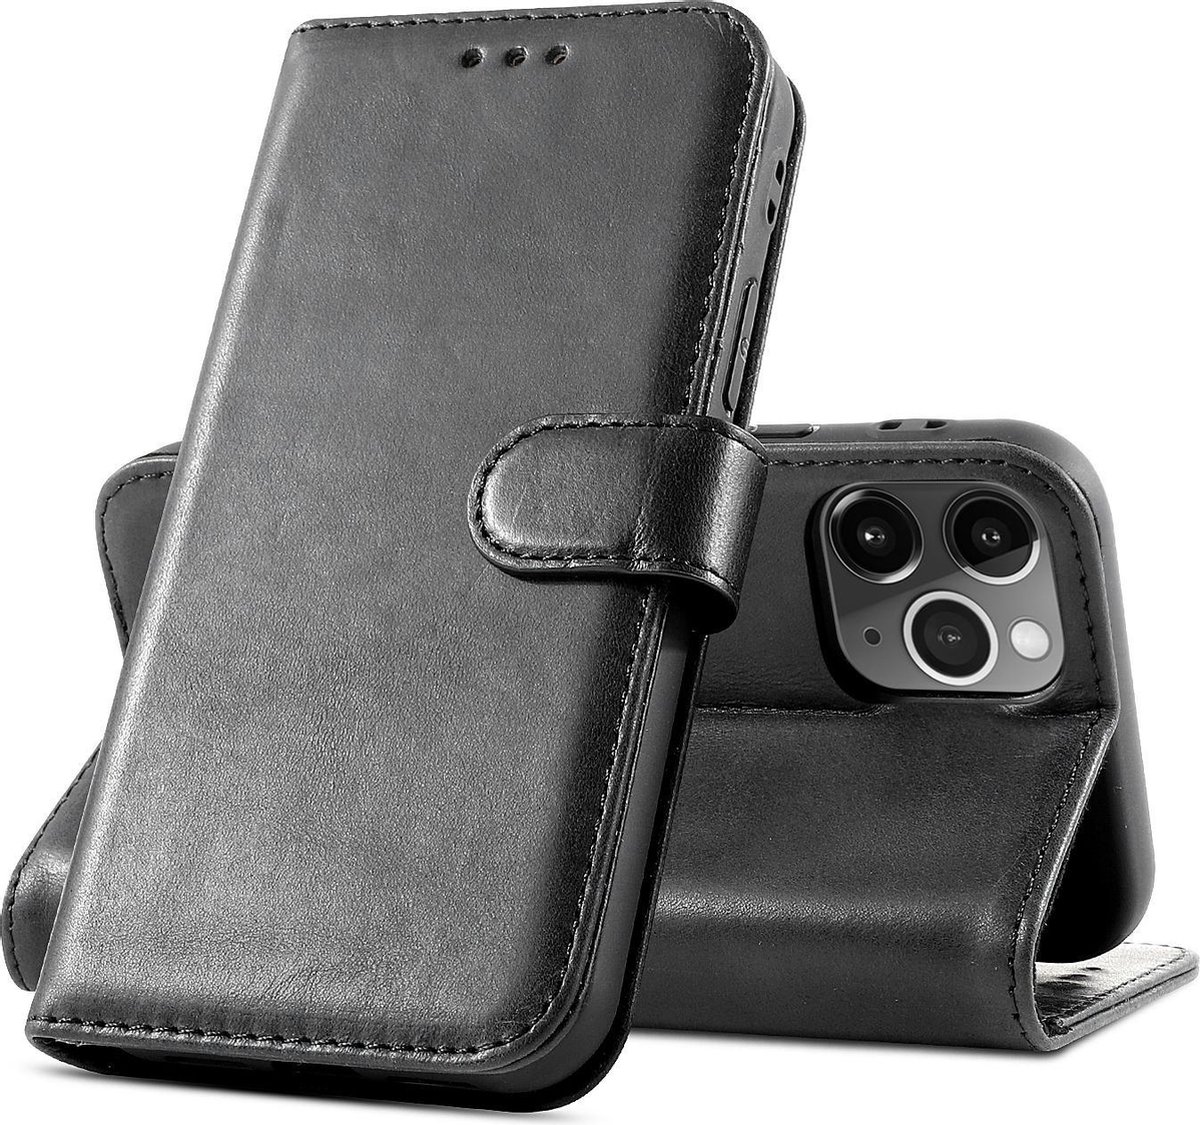 Klassiek Design - Echt Lederen Hoesje - Book Case Telefoonhoesje - Echt Leren Portemonnee Wallet Case - iPhone 12 en iPhone 12 Pro - Zwart